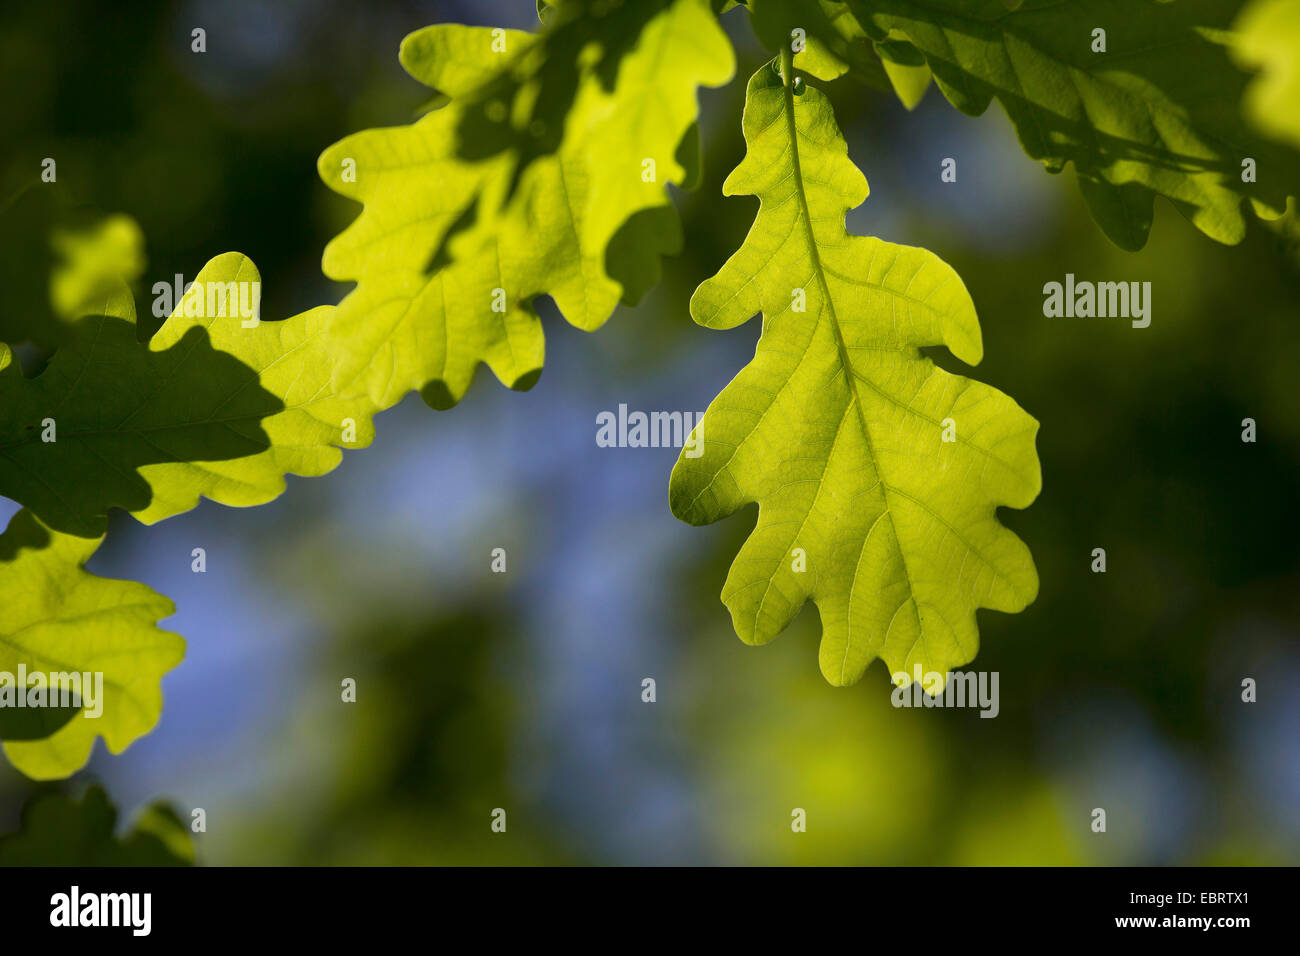 Le chêne commun, le chêne pédonculé, chêne pédonculé (Quercus robur), rétro-éclairage en feuille de chêne, Allemagne Banque D'Images